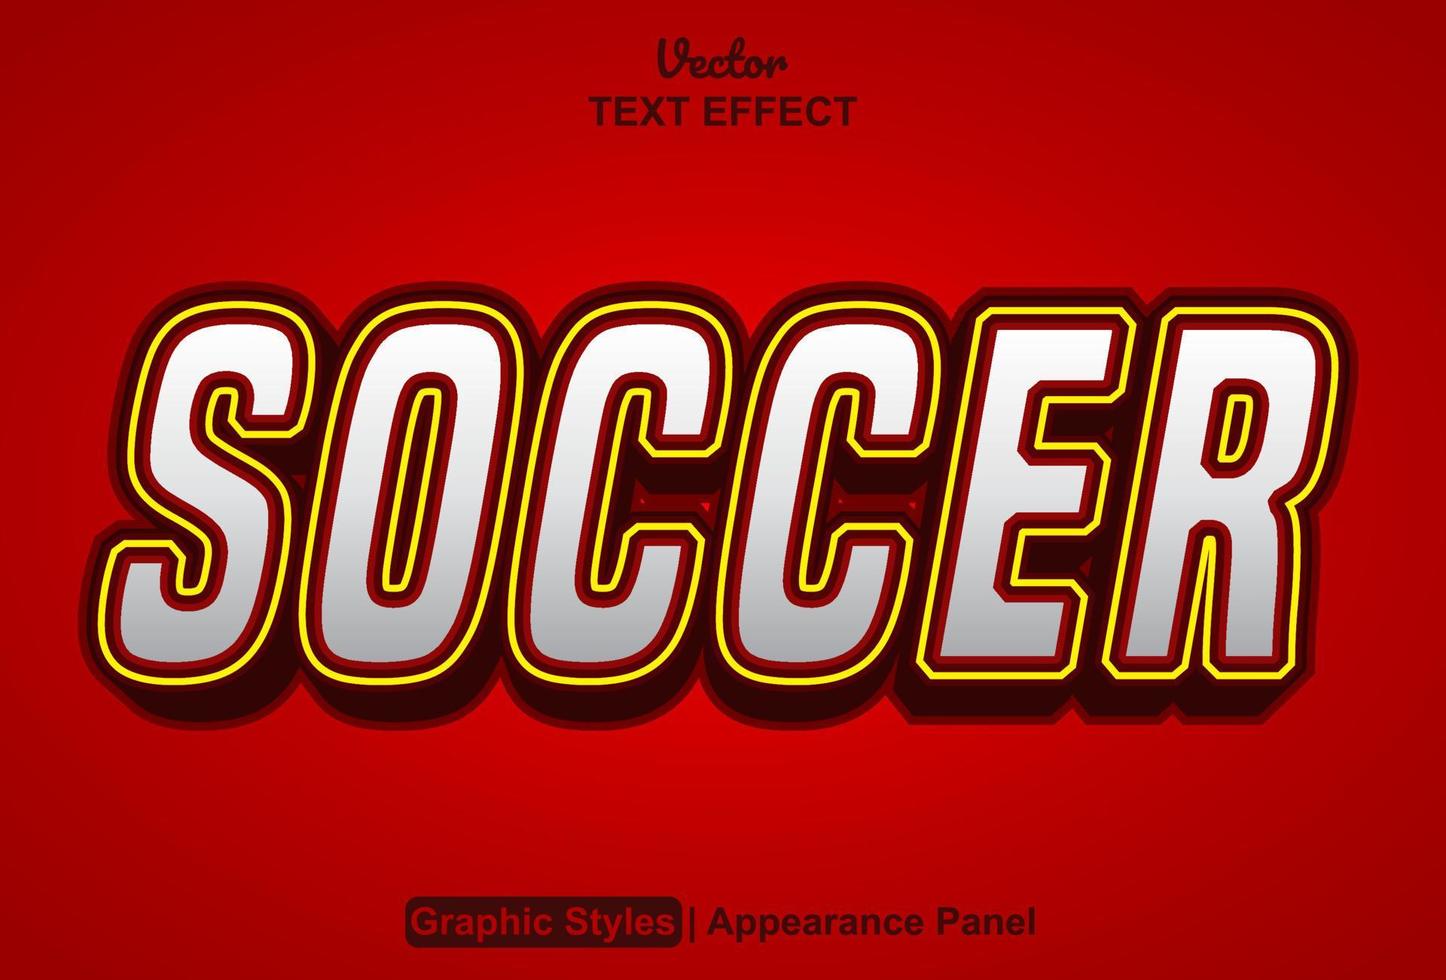 efecto de texto de fútbol con estilo gráfico y editable. vector